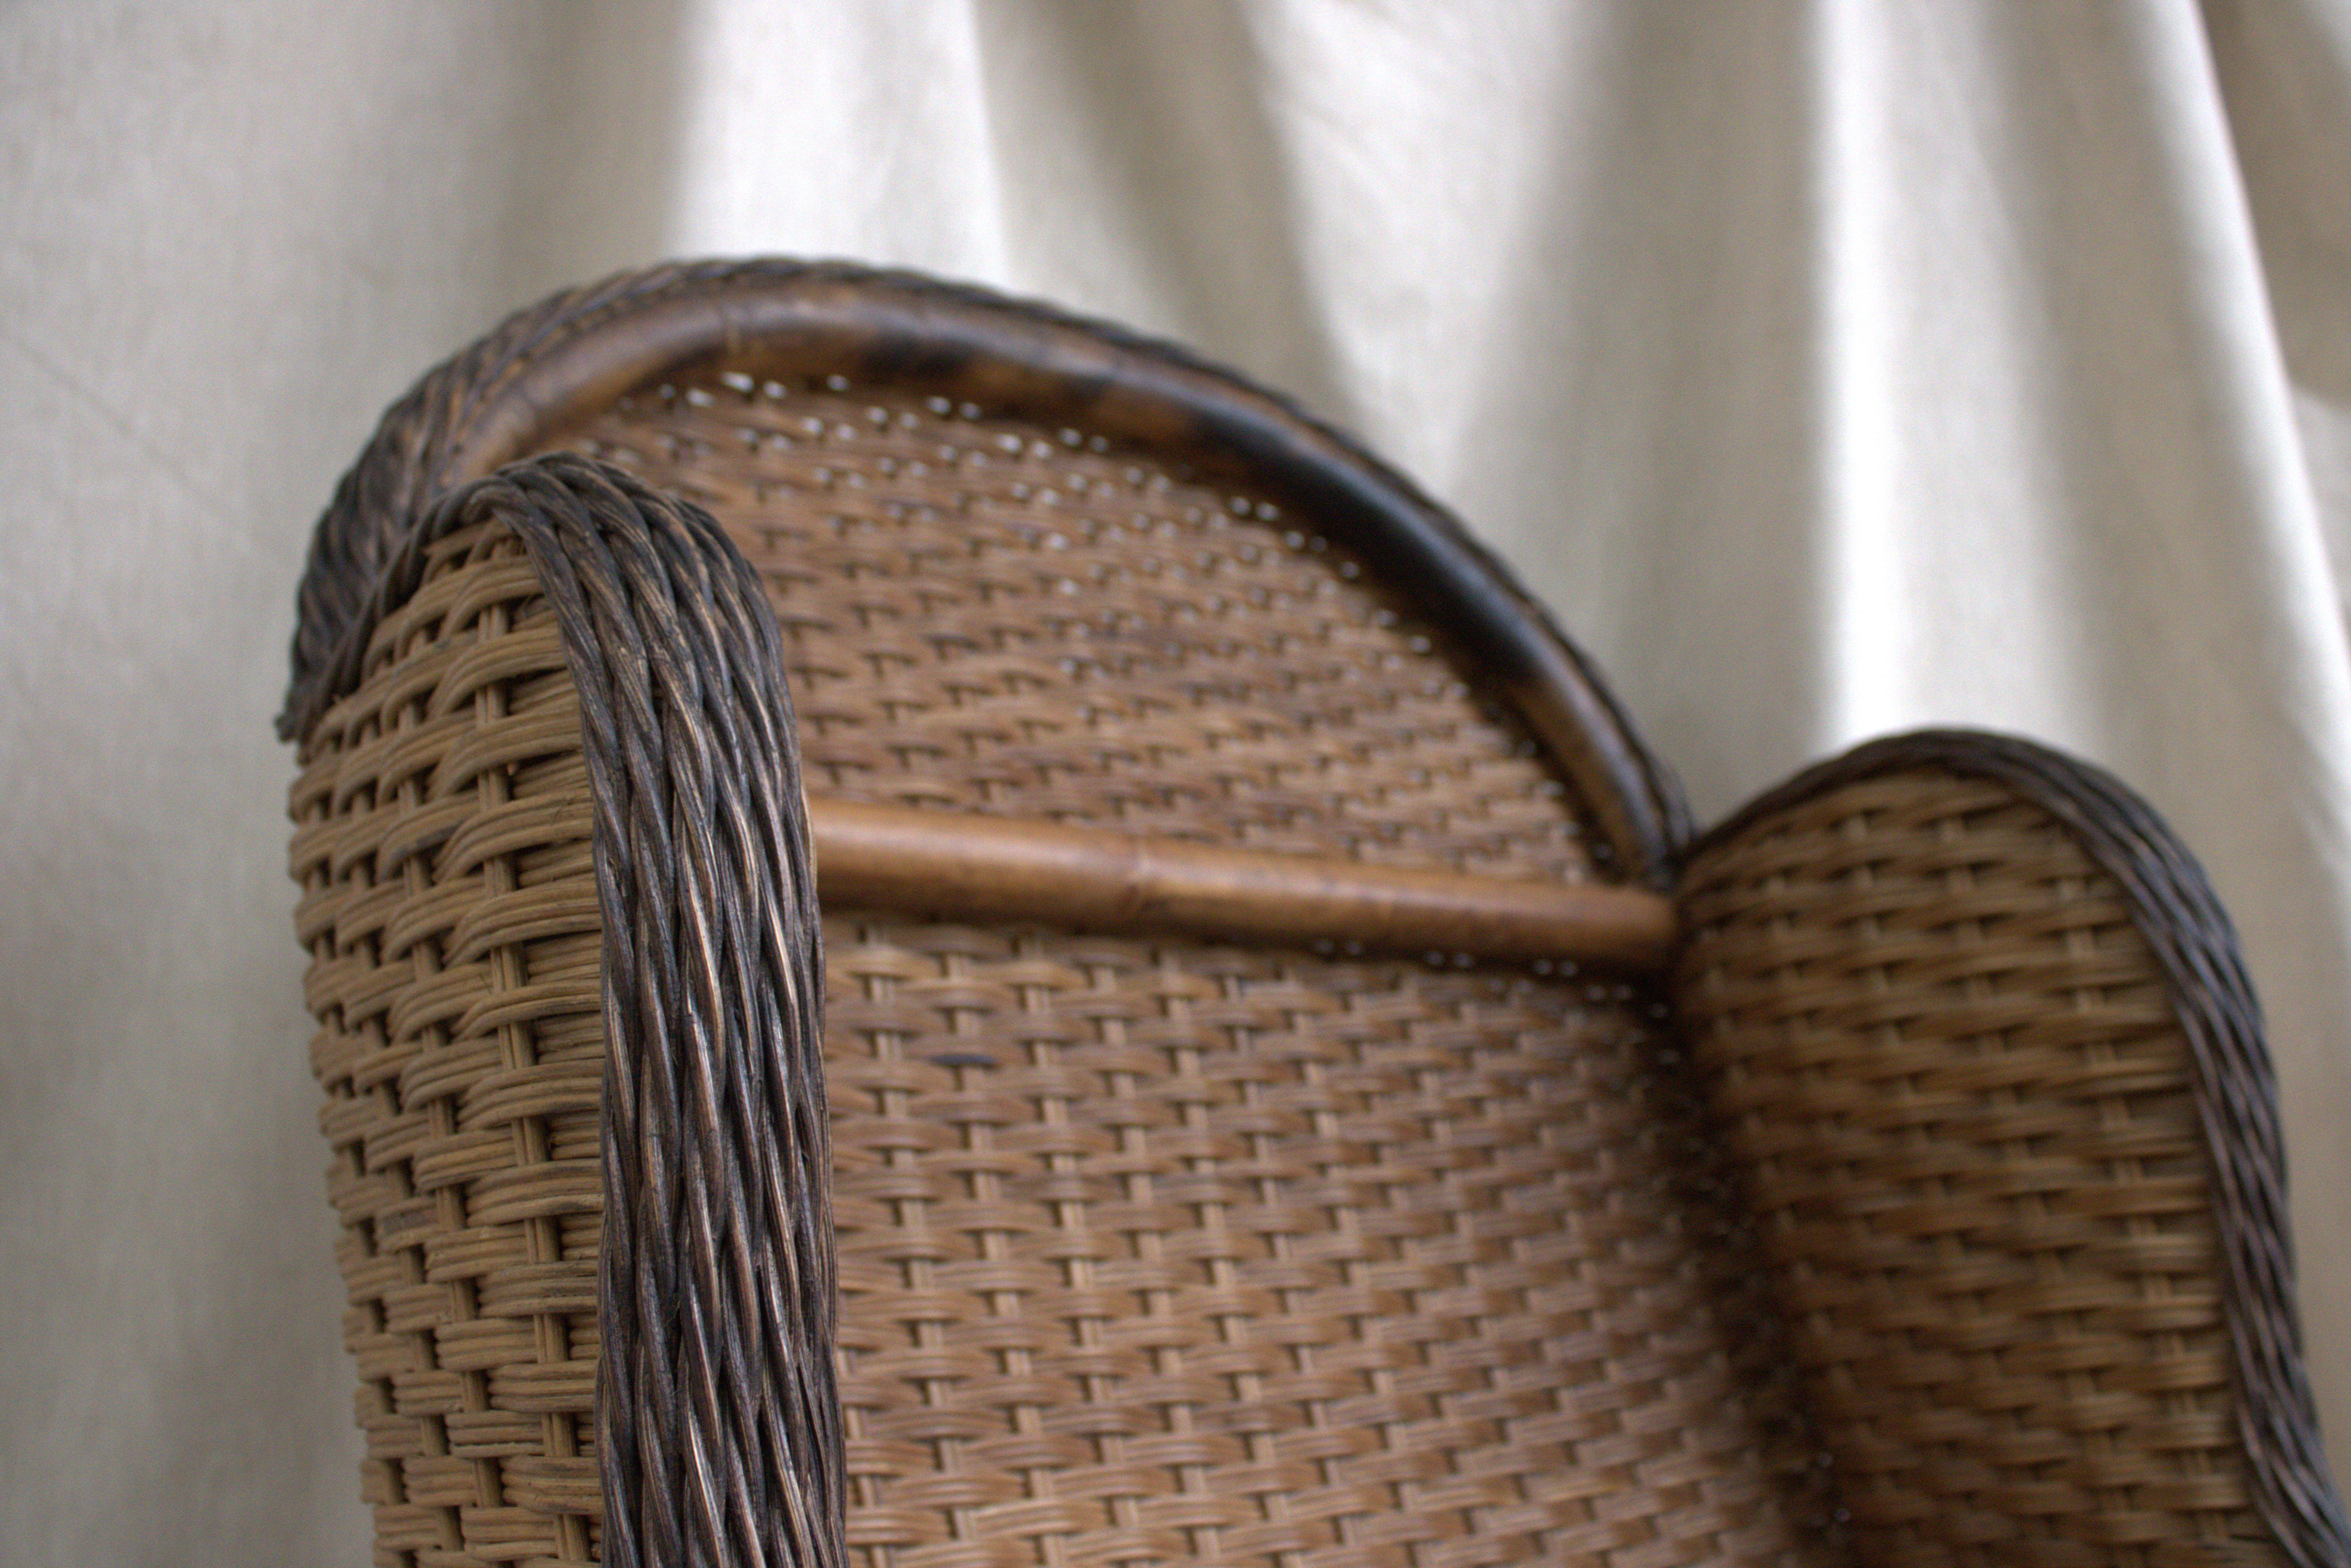 Chaise à accoudoirs en rotin tressé de paille avec des détails en forme de coquille sculptés sur de fins accents de bois.

Les détails en bois sculpté en forme de coquille nous incitent à penser que ce bel exemple, reproduit vers 1980, date de la